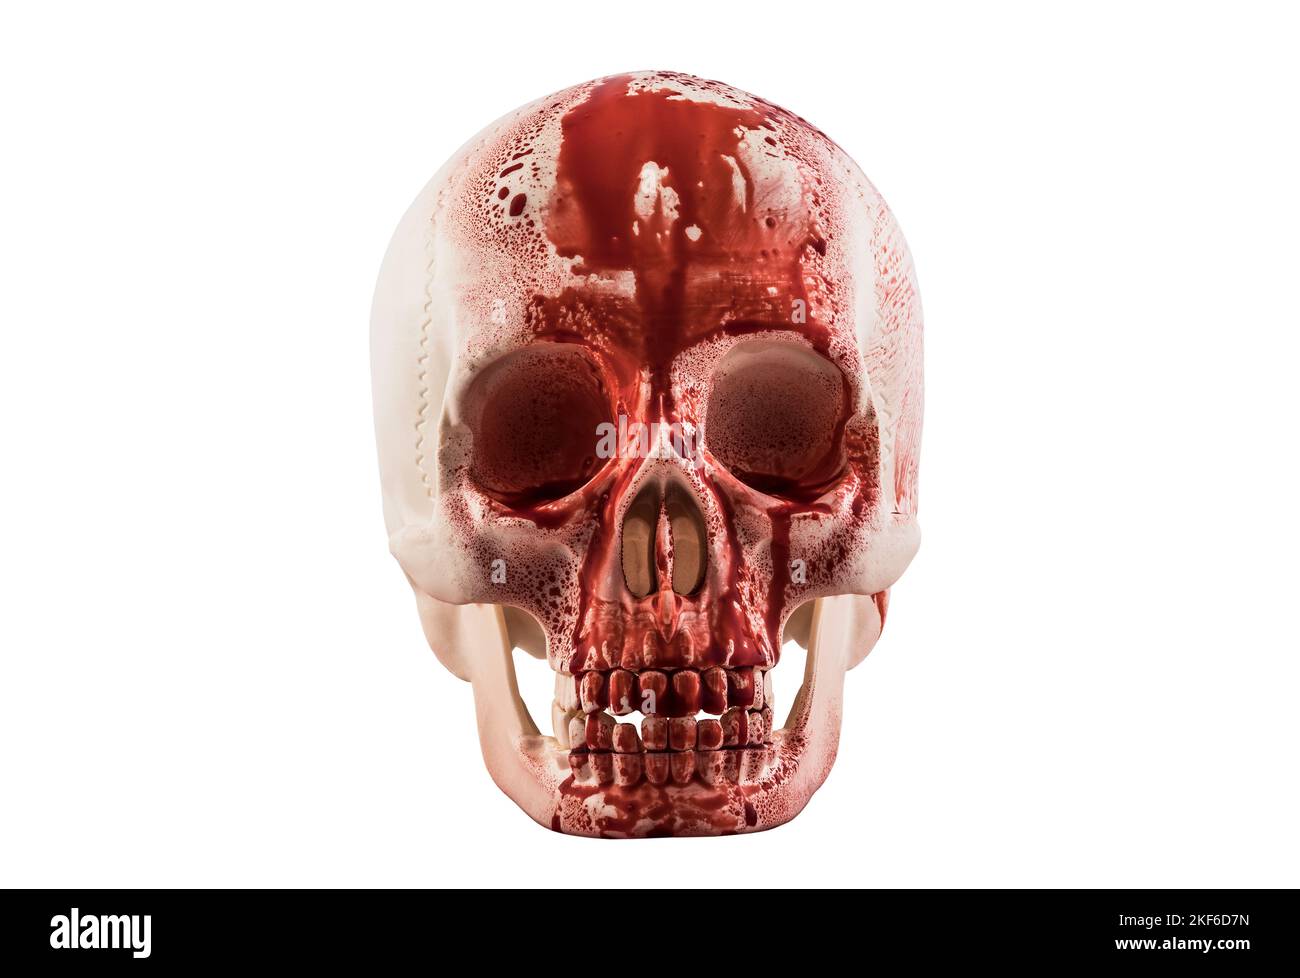 Cranio umano nel sangue isolato su sfondo bianco con tracciato di ritaglio Foto Stock